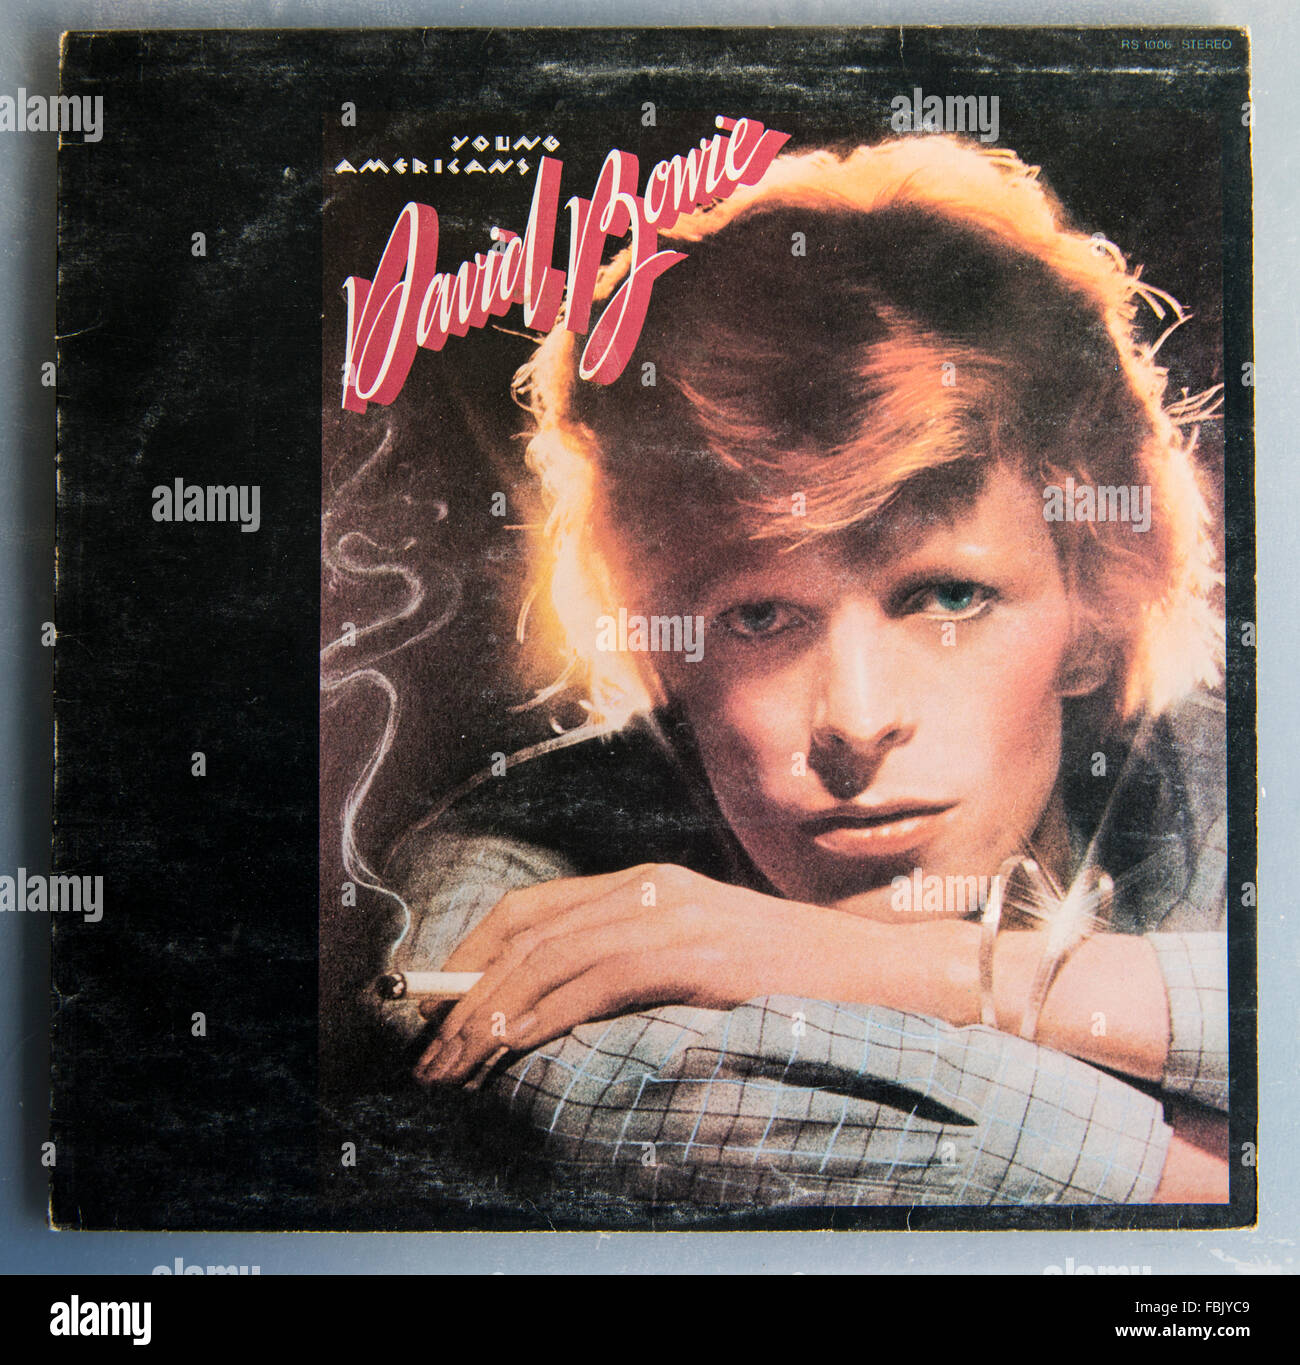 Bildercover von Young Americans, dem neunten Studioalbum von David Bowie, das 1975 veröffentlicht wurde Stockfoto